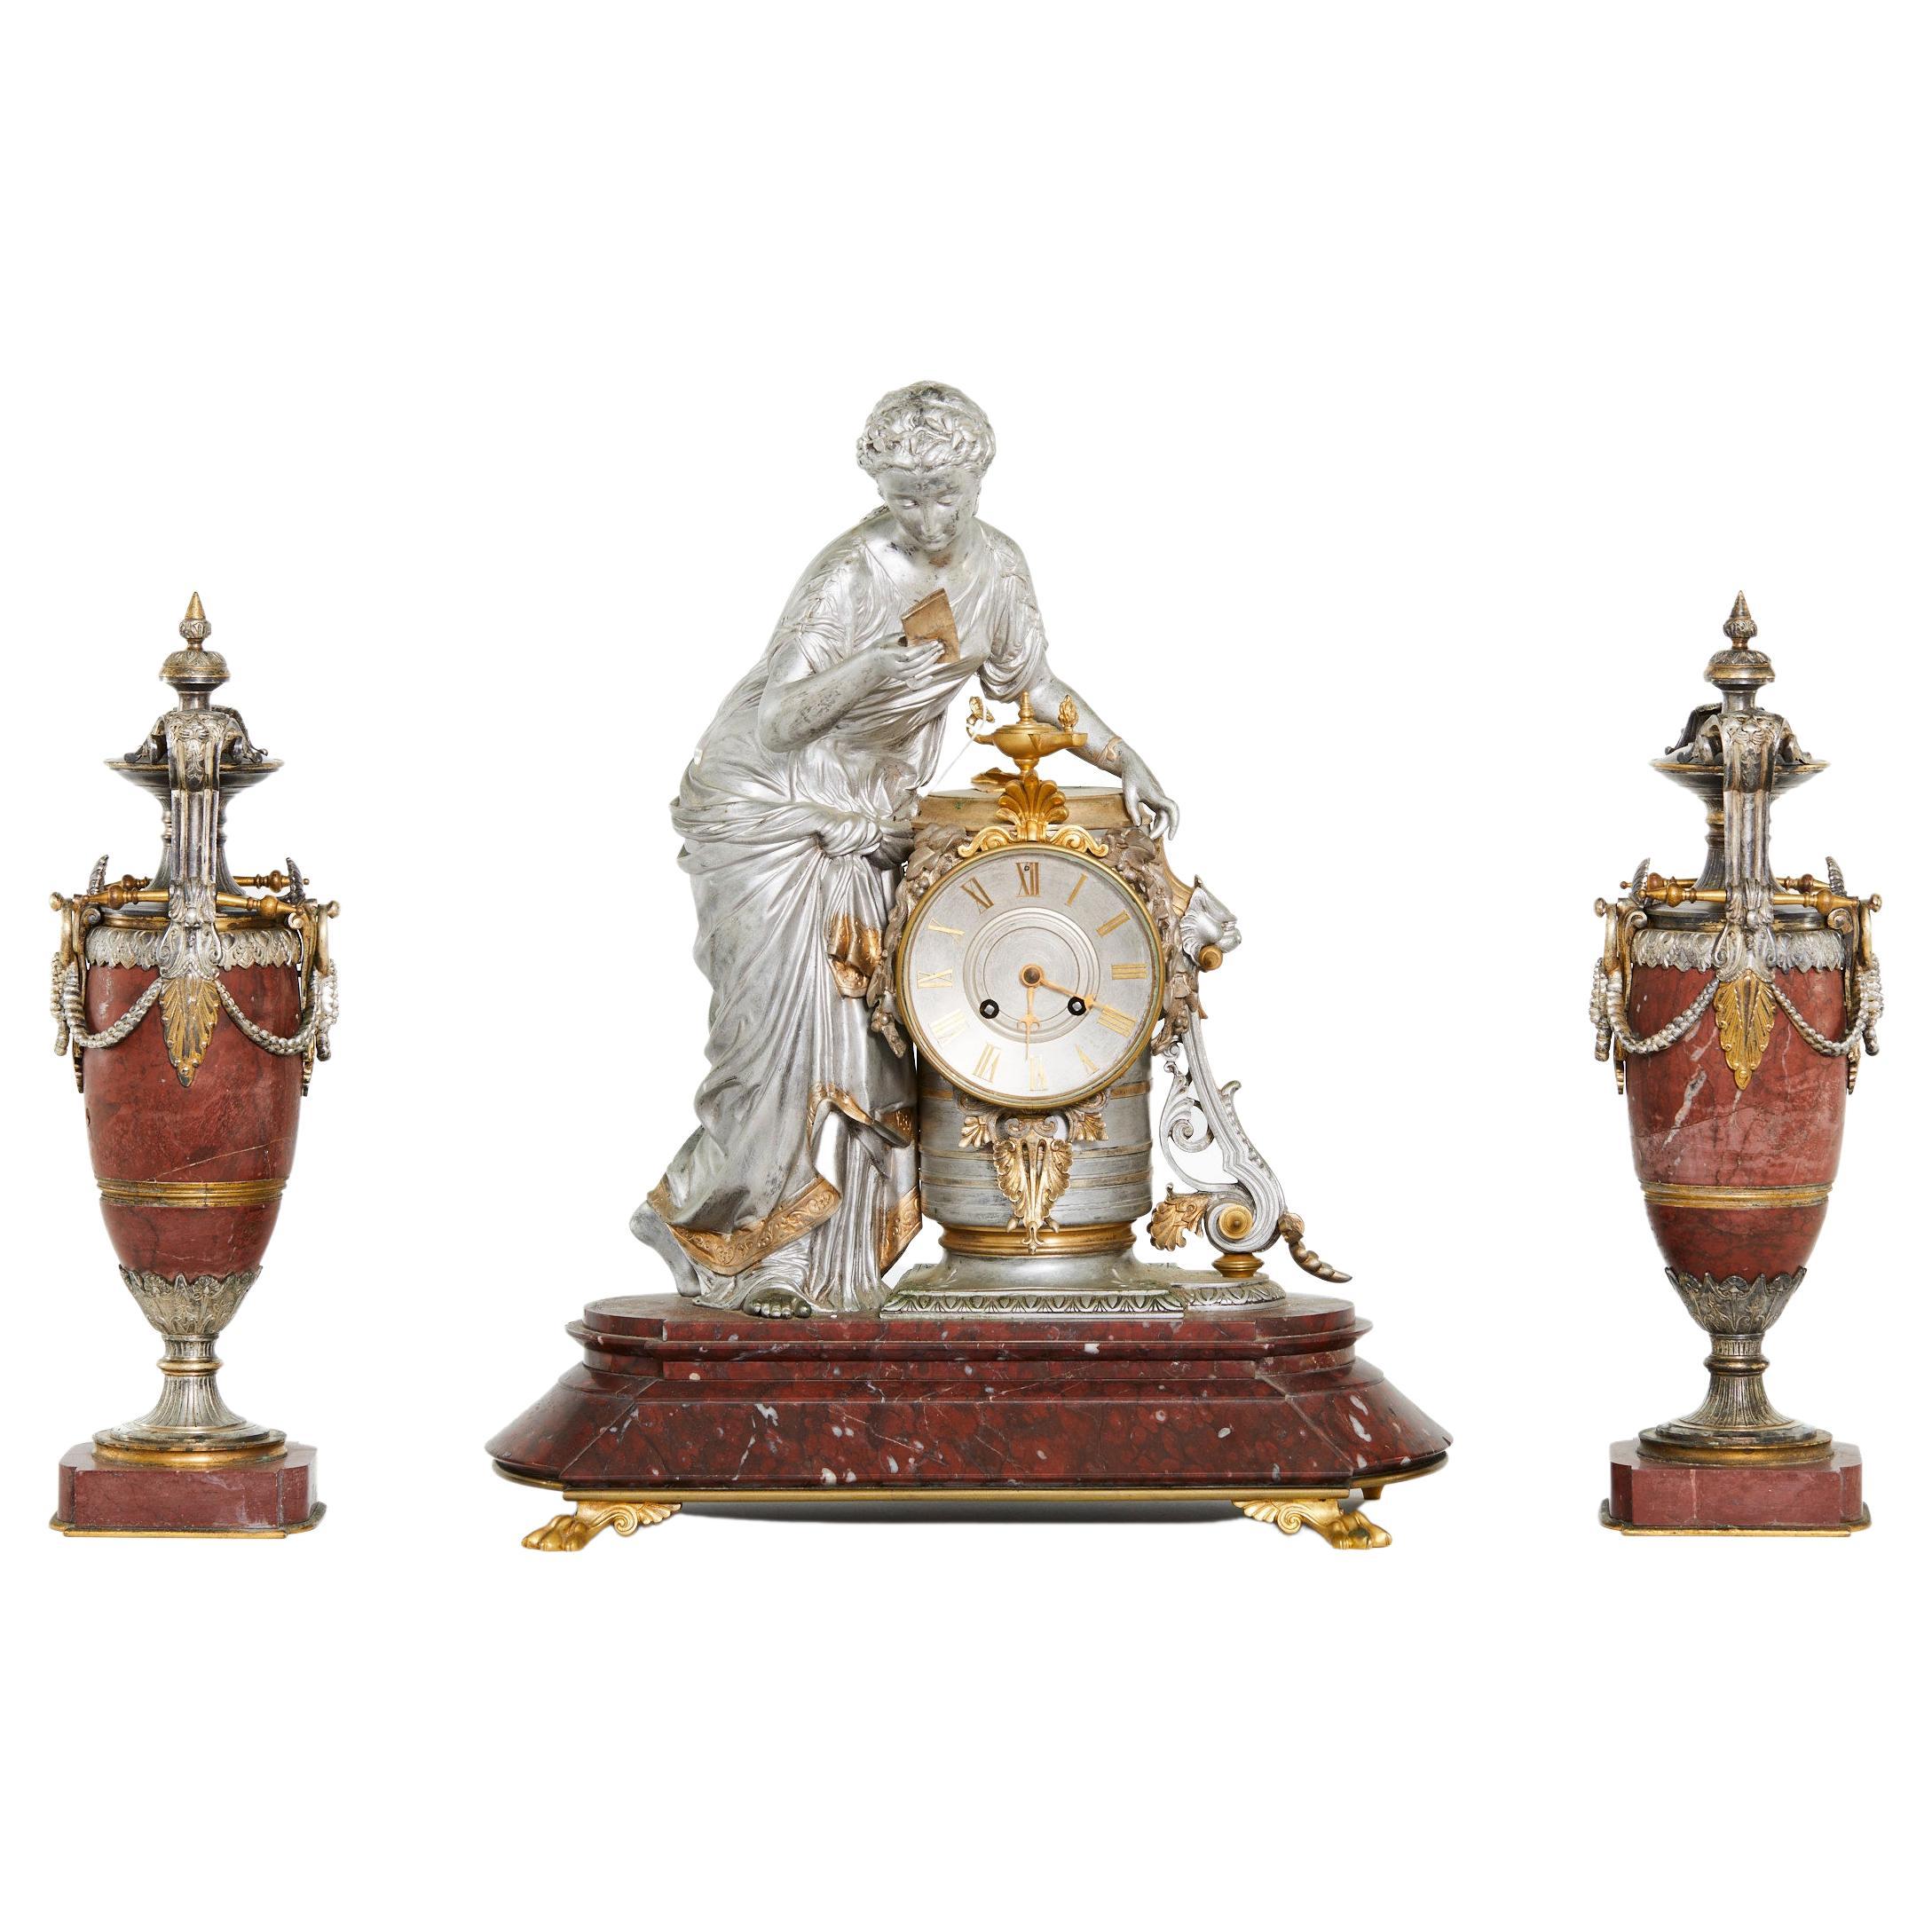 Garniture décorative d'horloge en bronze argenté et marbre rouge du milieu du XIXe siècle. L'horloge représente une femme à la silhouette classique, aux vêtements drapés, flanquée de deux urnes assorties. Mouvement de huit jours en laiton et